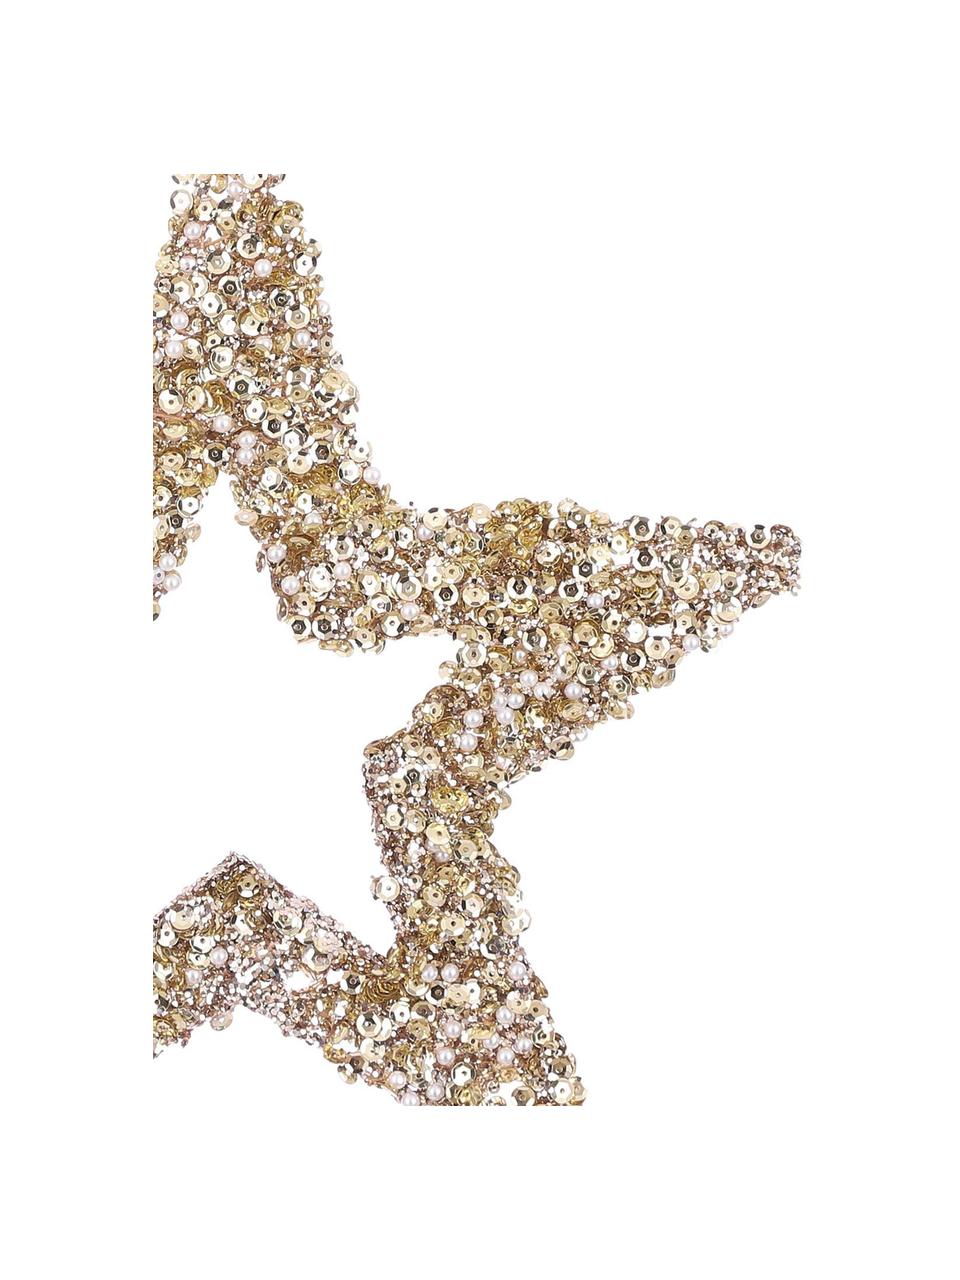 Dekoracja wisząca Shining Star, Bawełna, Odcienie szampańskiego, S 25 x W 25 cm